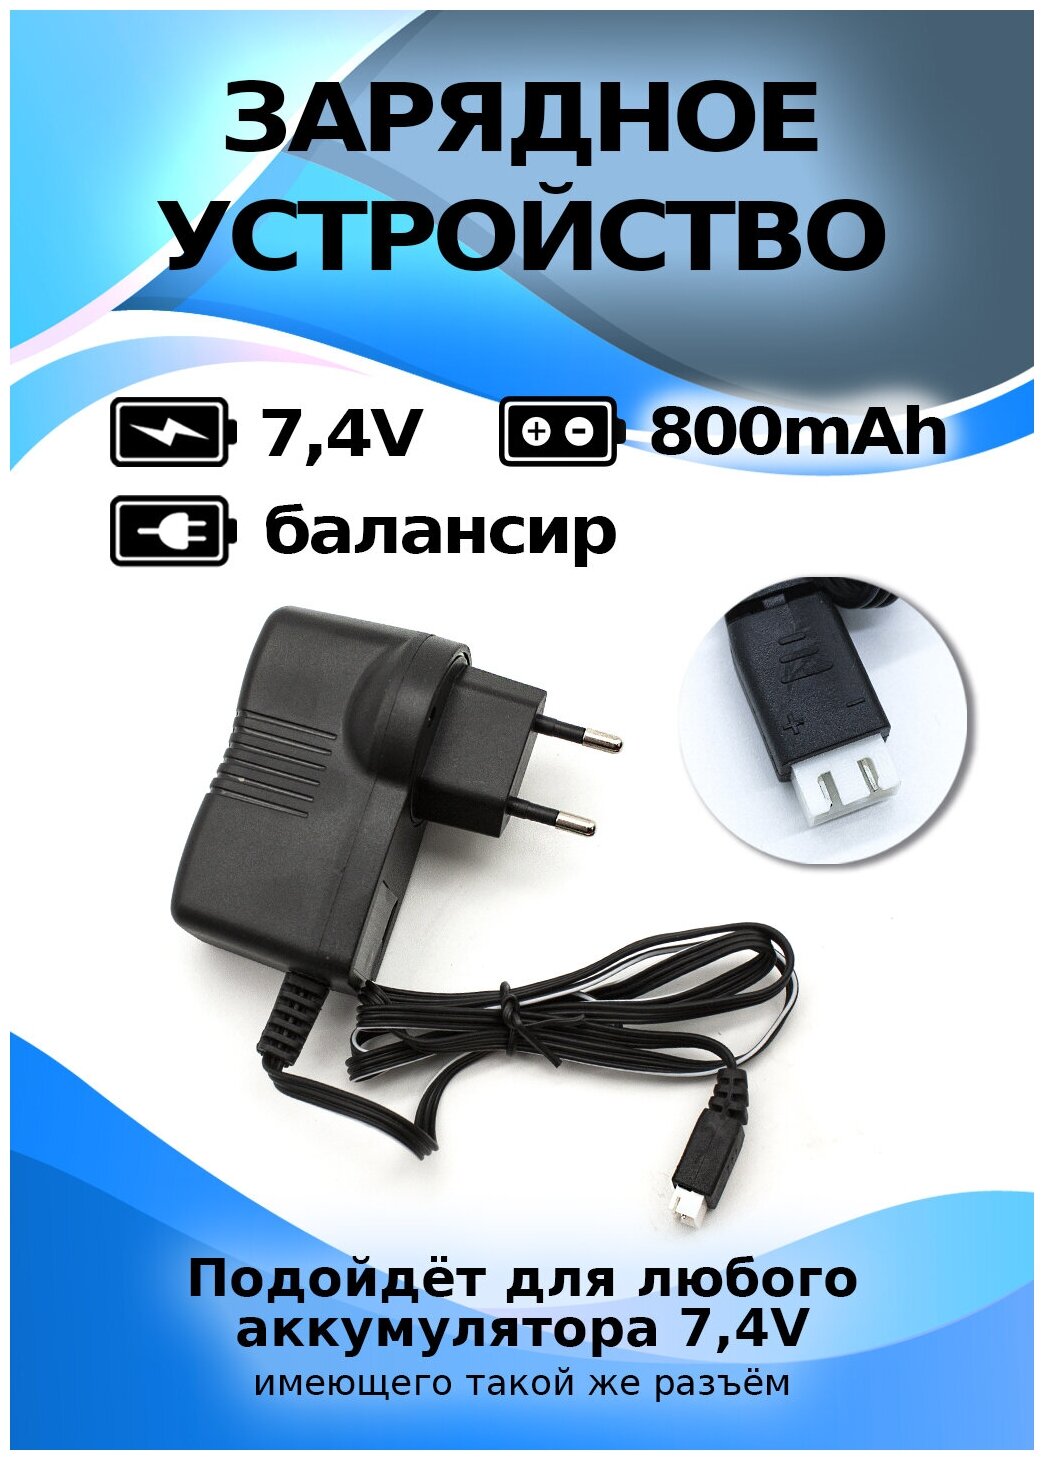 Зарядные устройства — купить в интернет-магазине по низкой цене на Яндекс Маркете